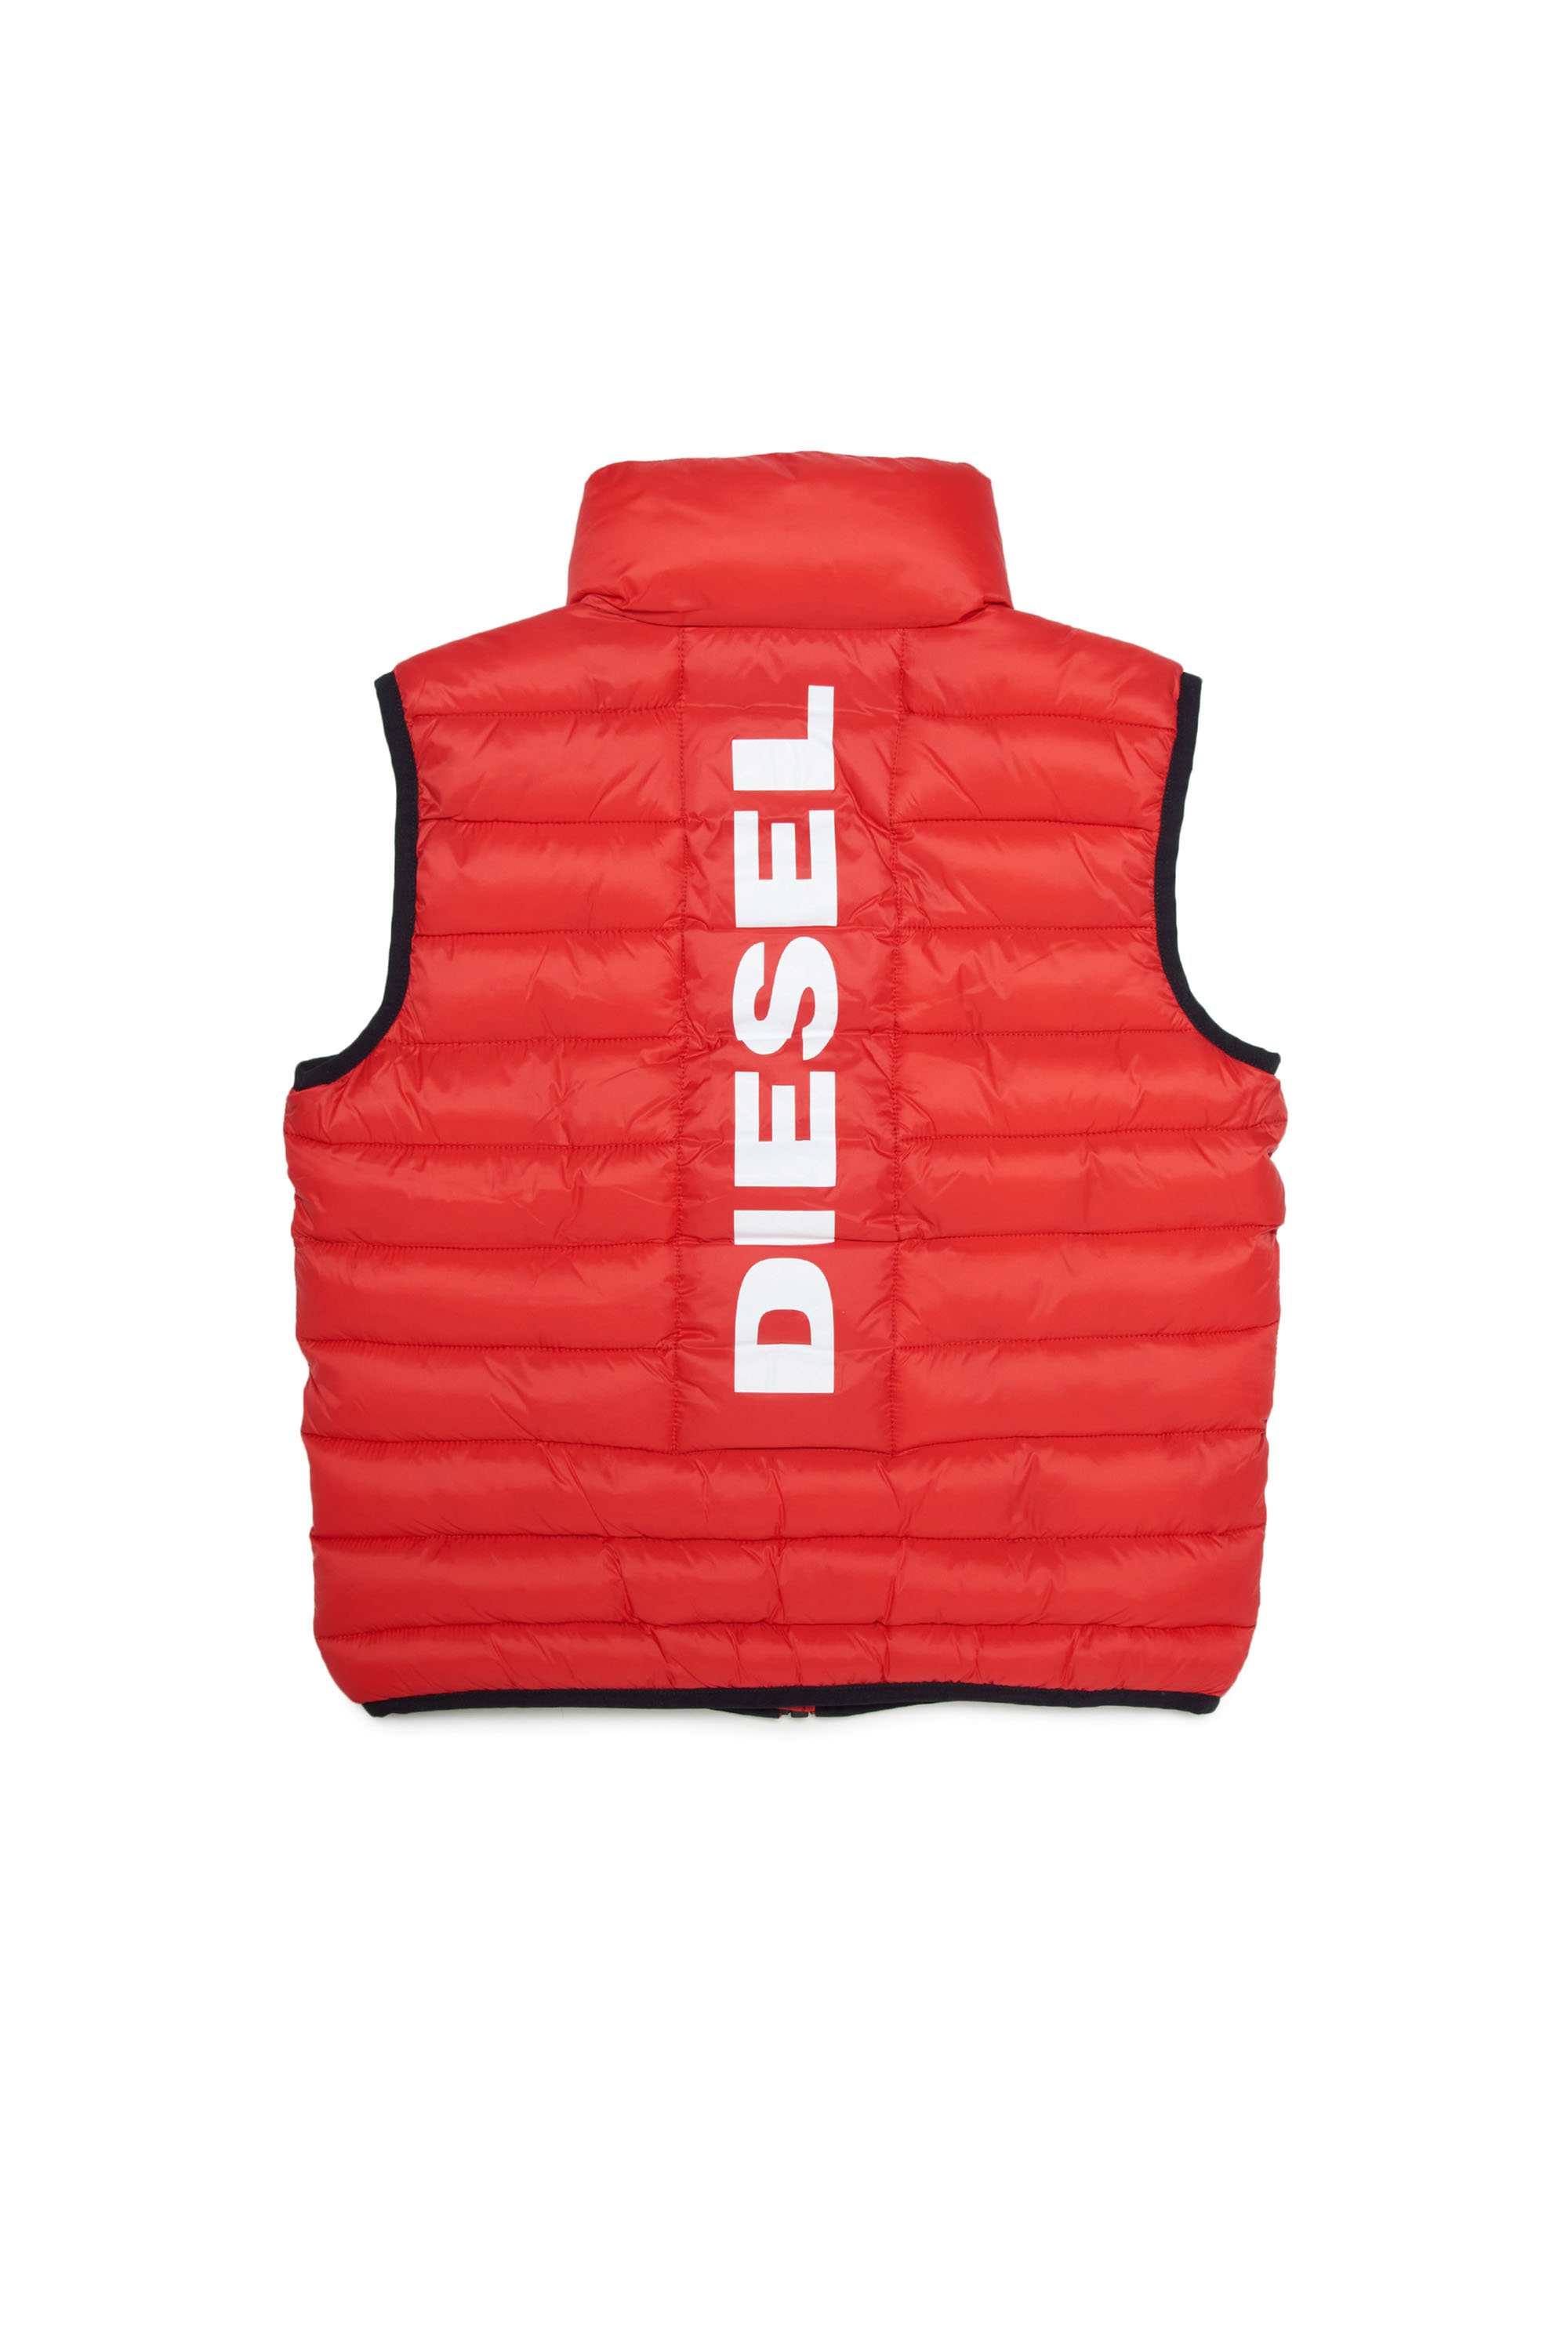 Diesel - JOLICE-SL, Red - Image 2